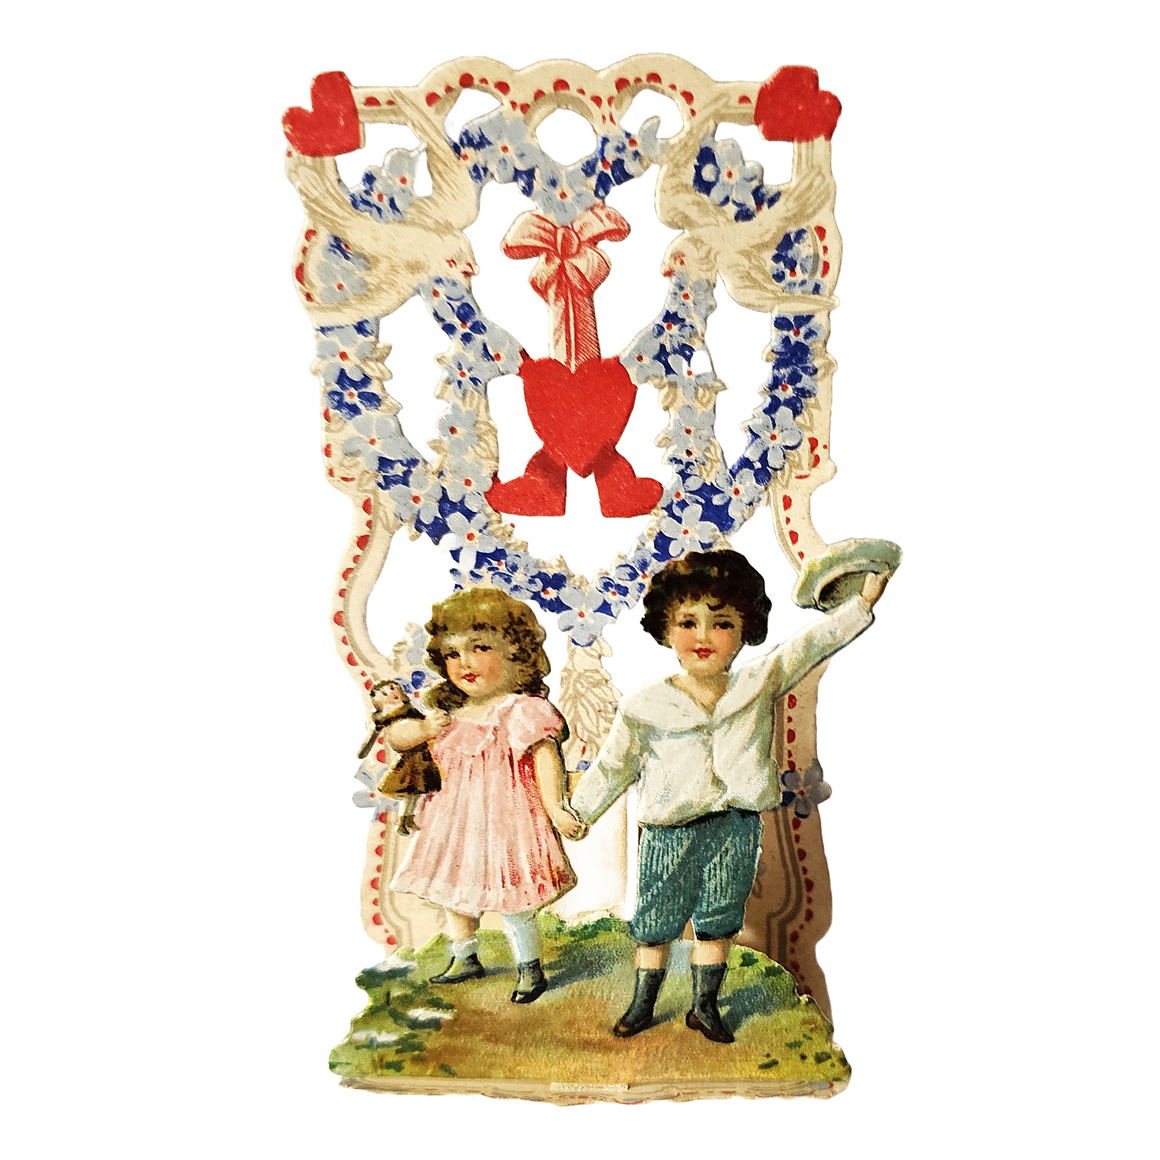 Antique Vintage German Die Cut Valentine Card 3D Stand Up Honeycomb Puff Children Holding Hands